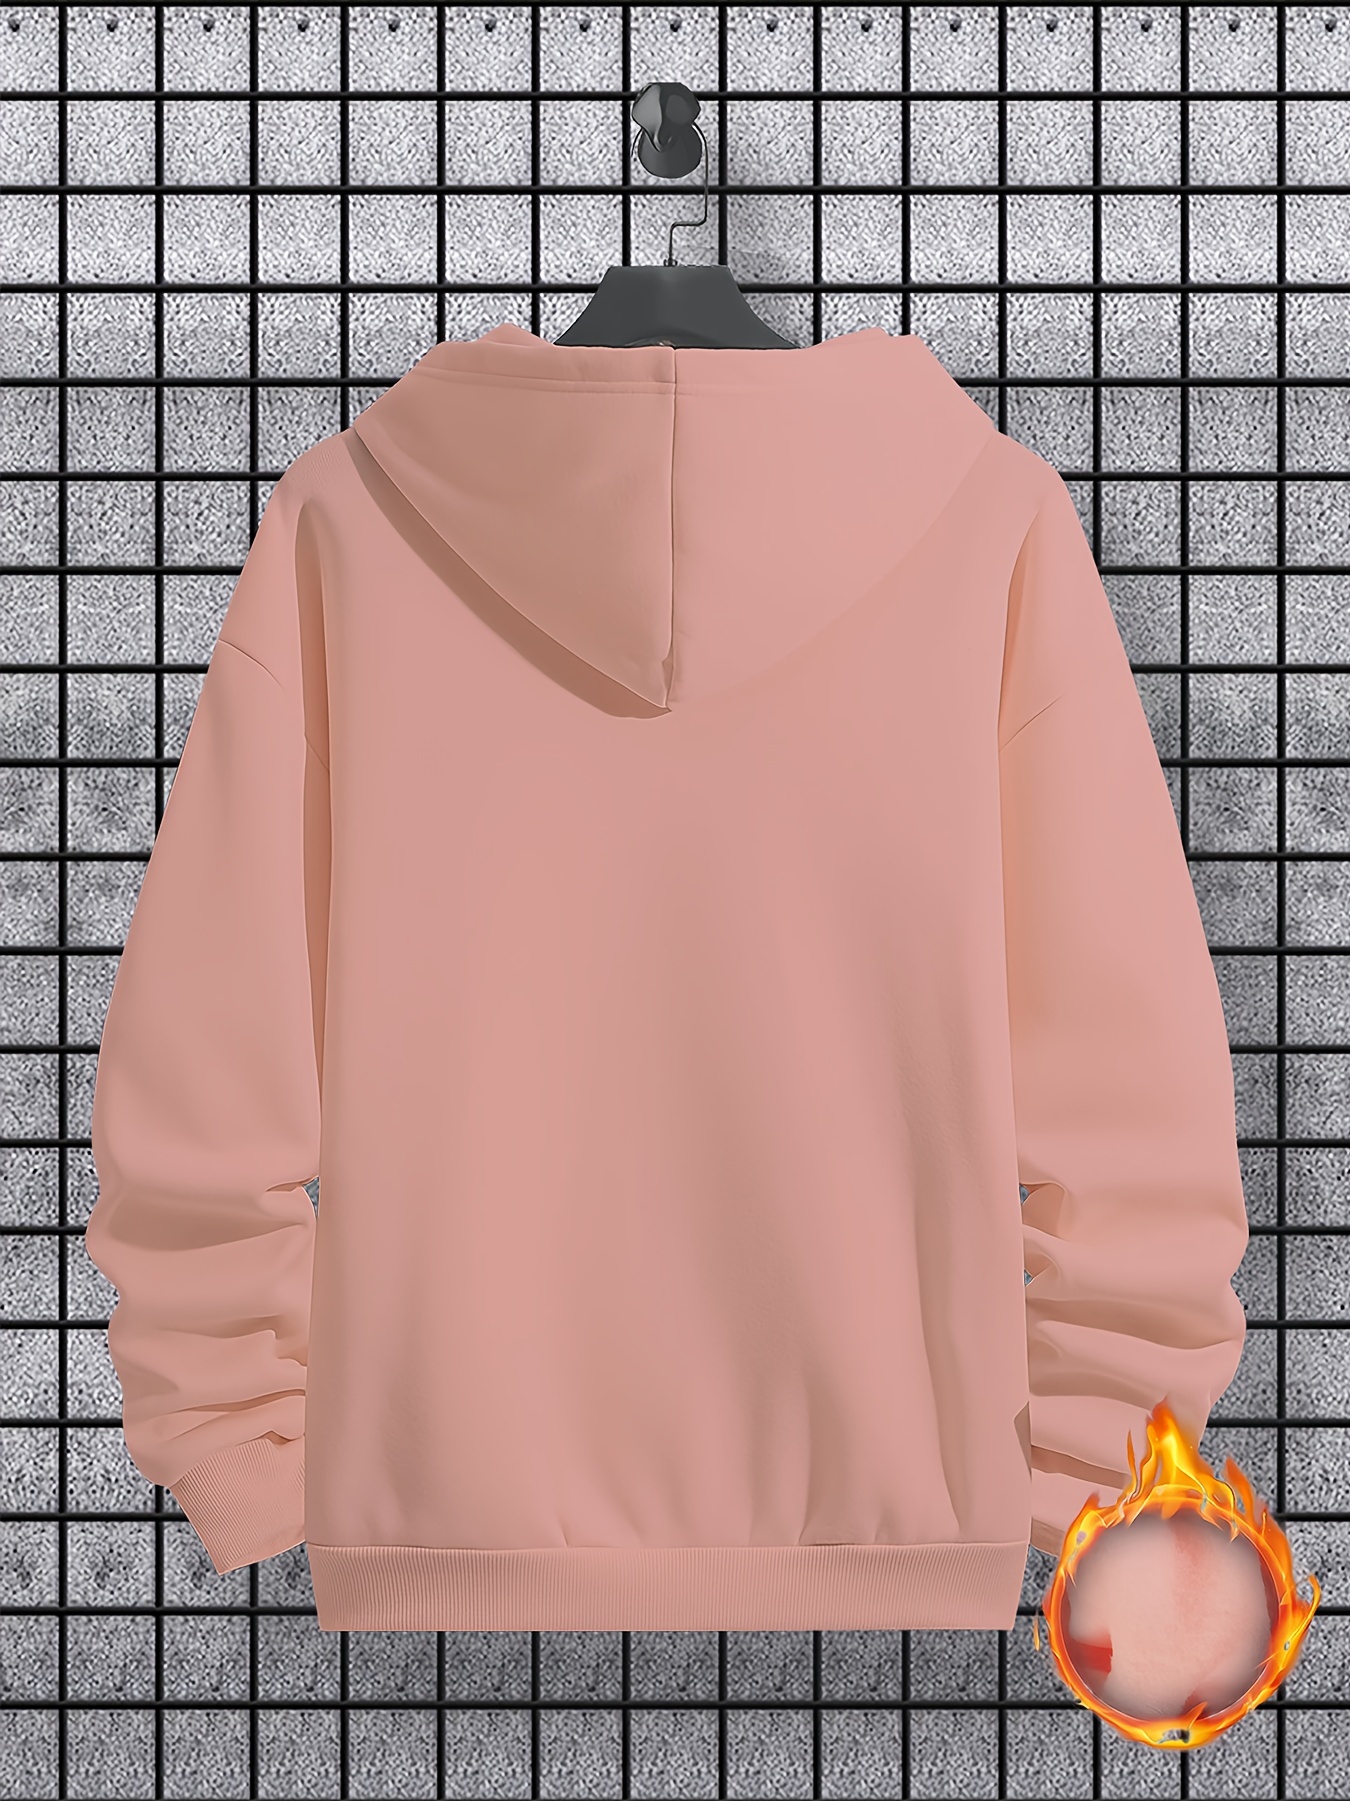 bus pattern warm hoodie with kangaroo pocket mens casual pullover hooded sweatshirt details 6